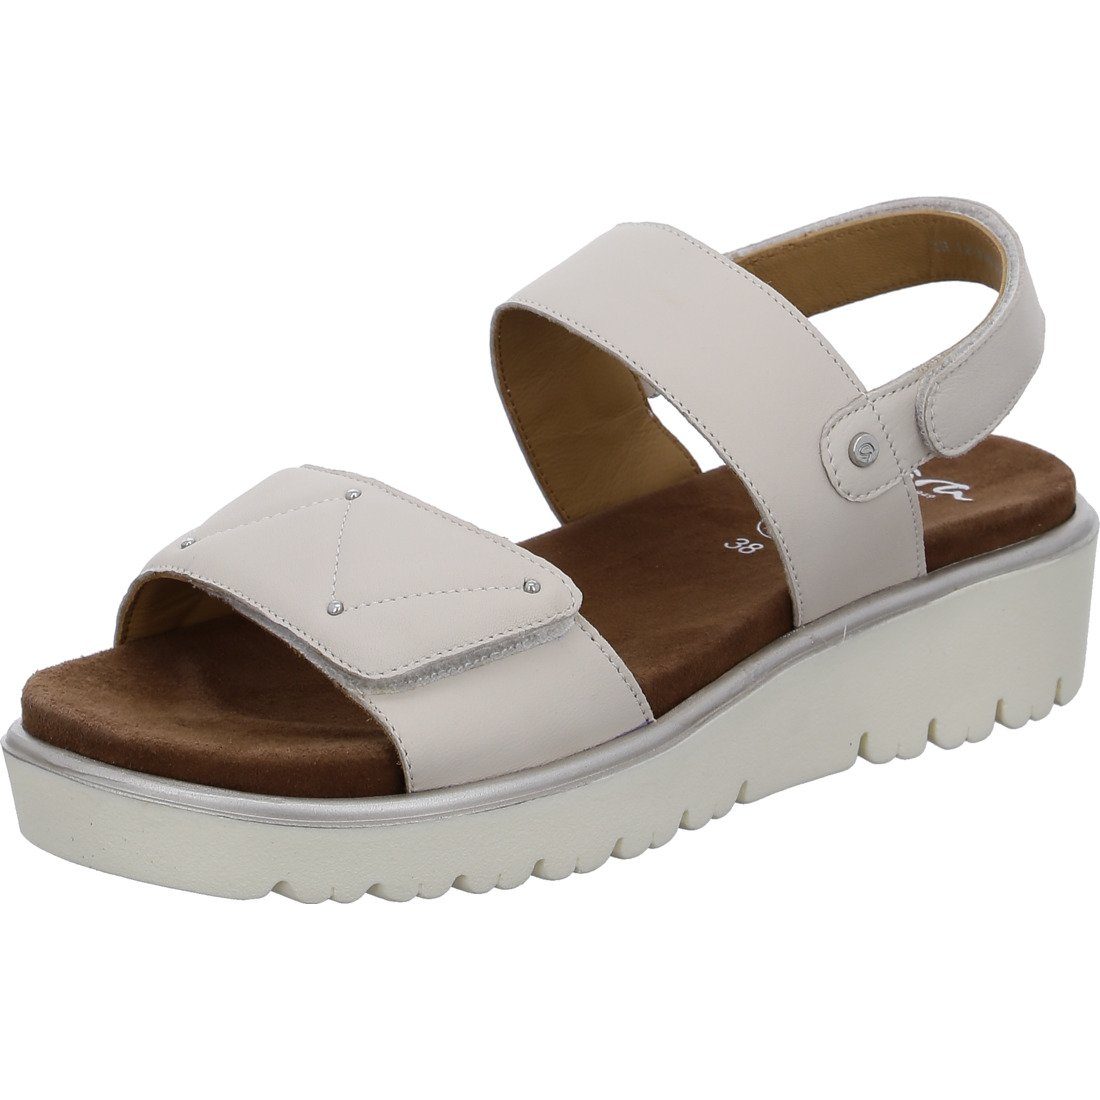 Ara Ara - 048122 Bilbao Schuhe, Glattleder Sandalette beige Sandalette